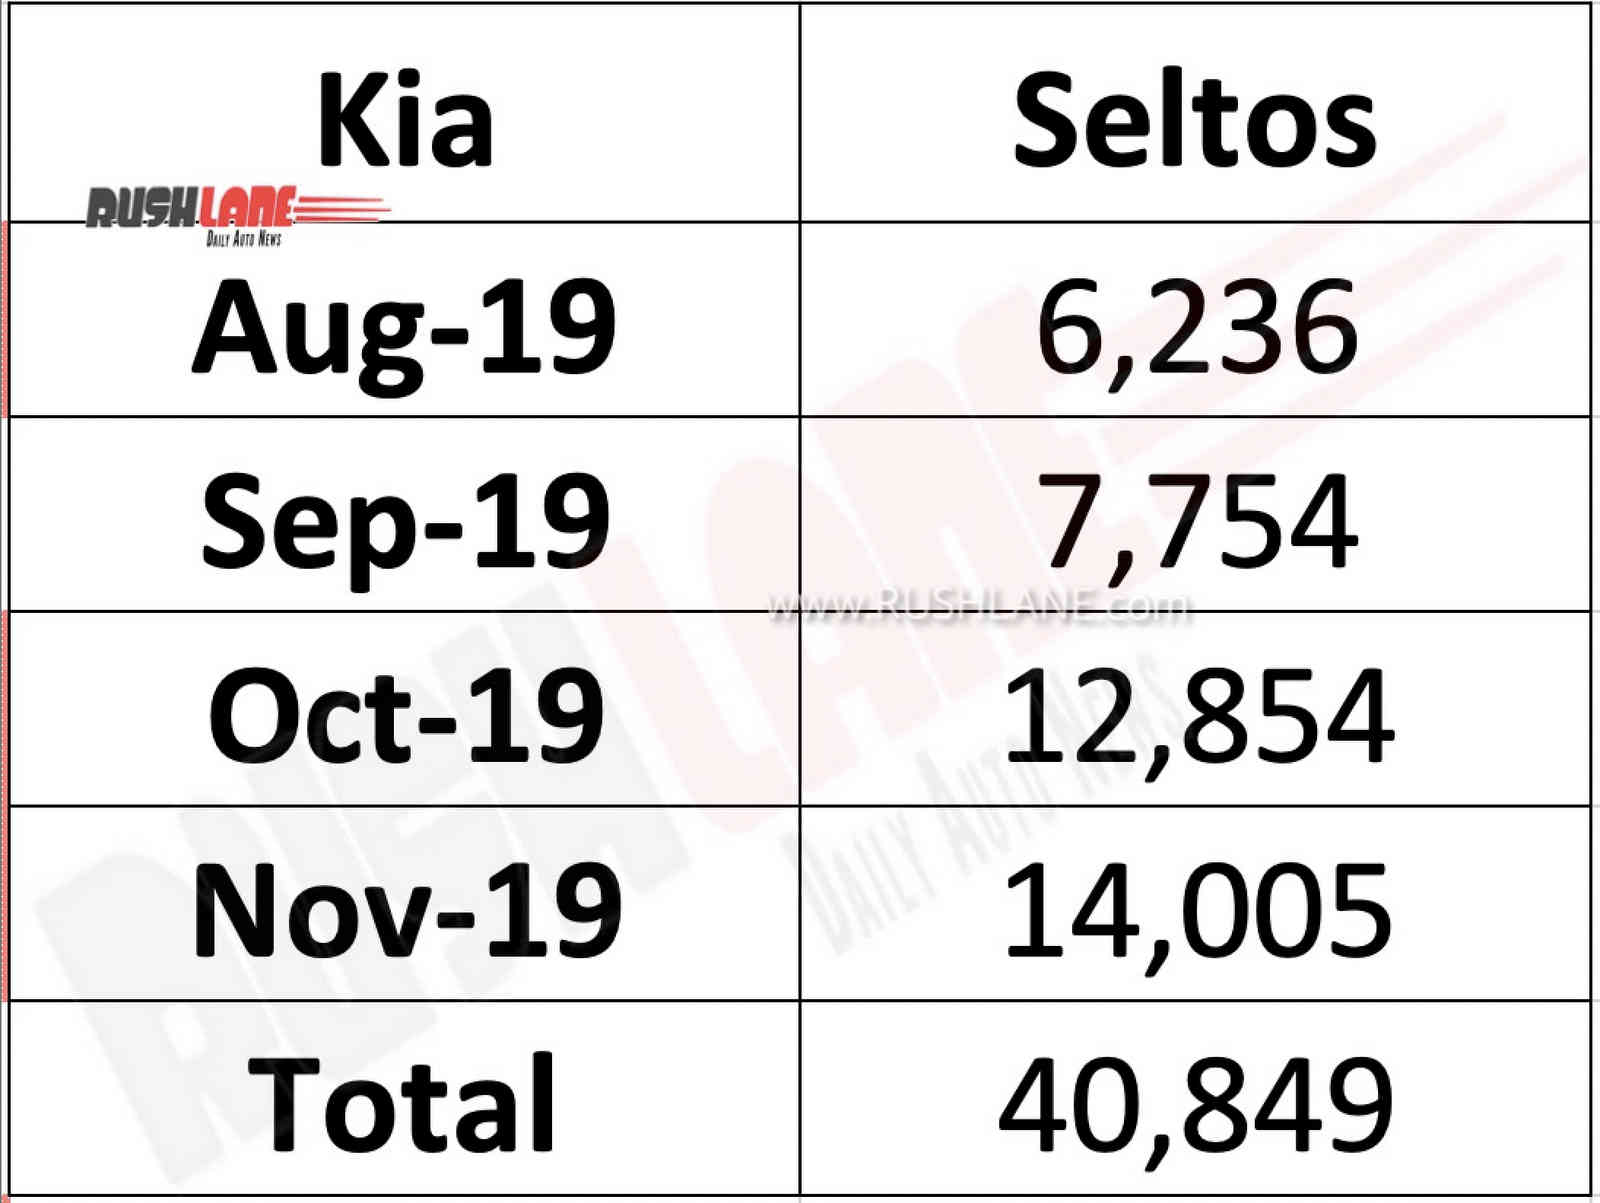 Kia Seltos sales Nov 2019